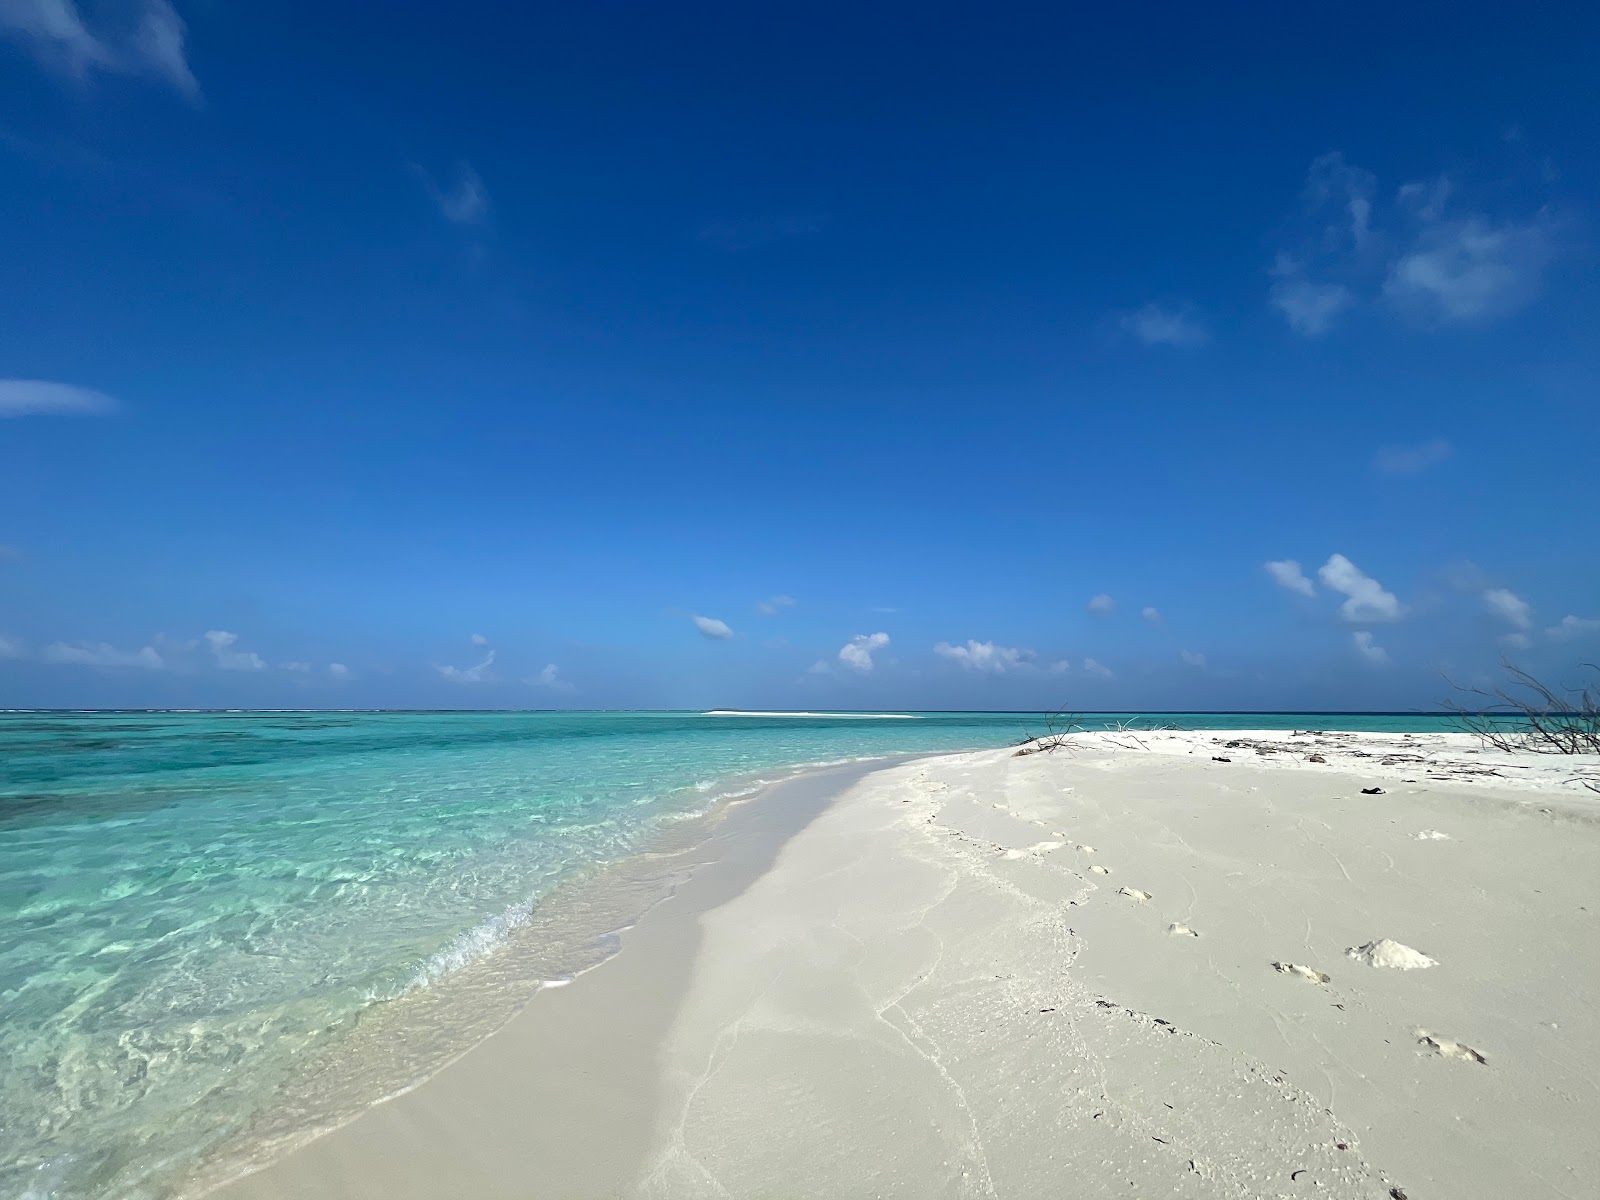 Munyafushi Beach'in fotoğrafı geniş plaj ile birlikte